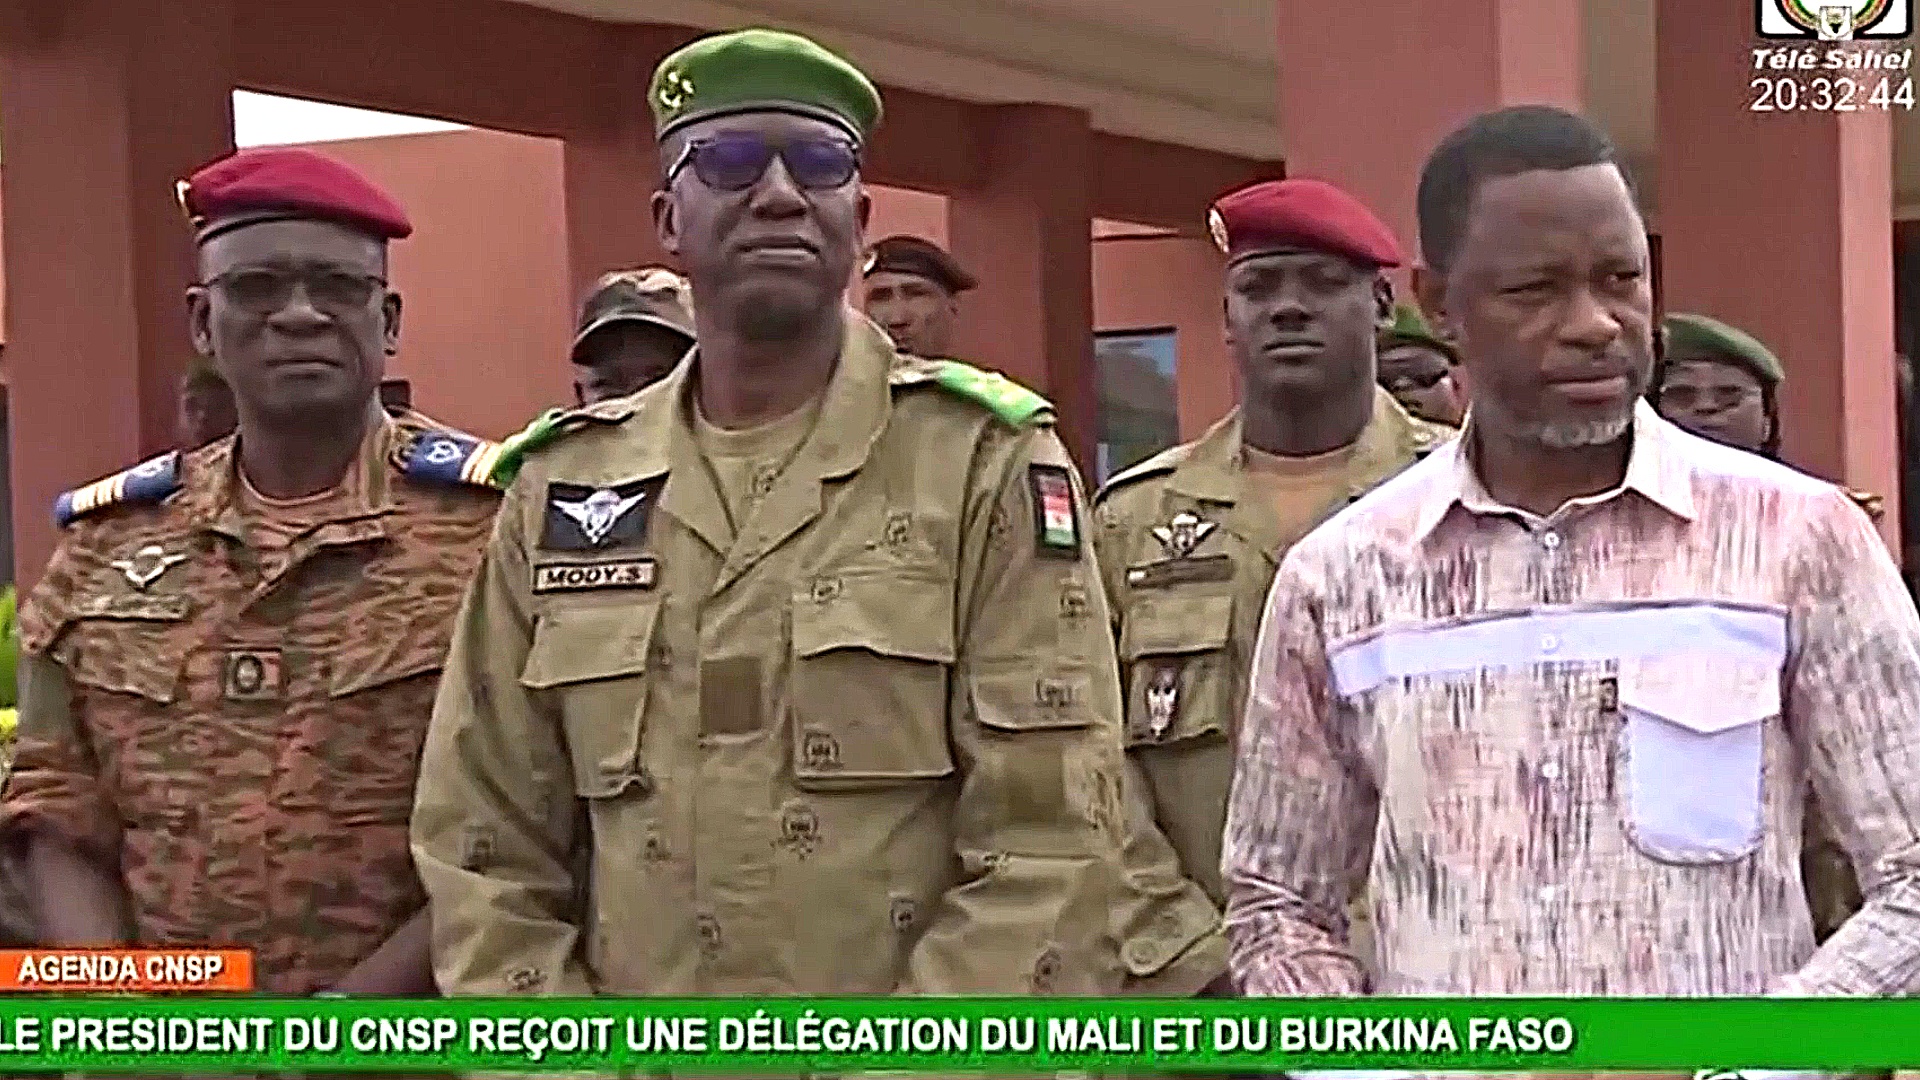 ЭКОВАС активизировал резервы для возможной военной интервенции в Нигере